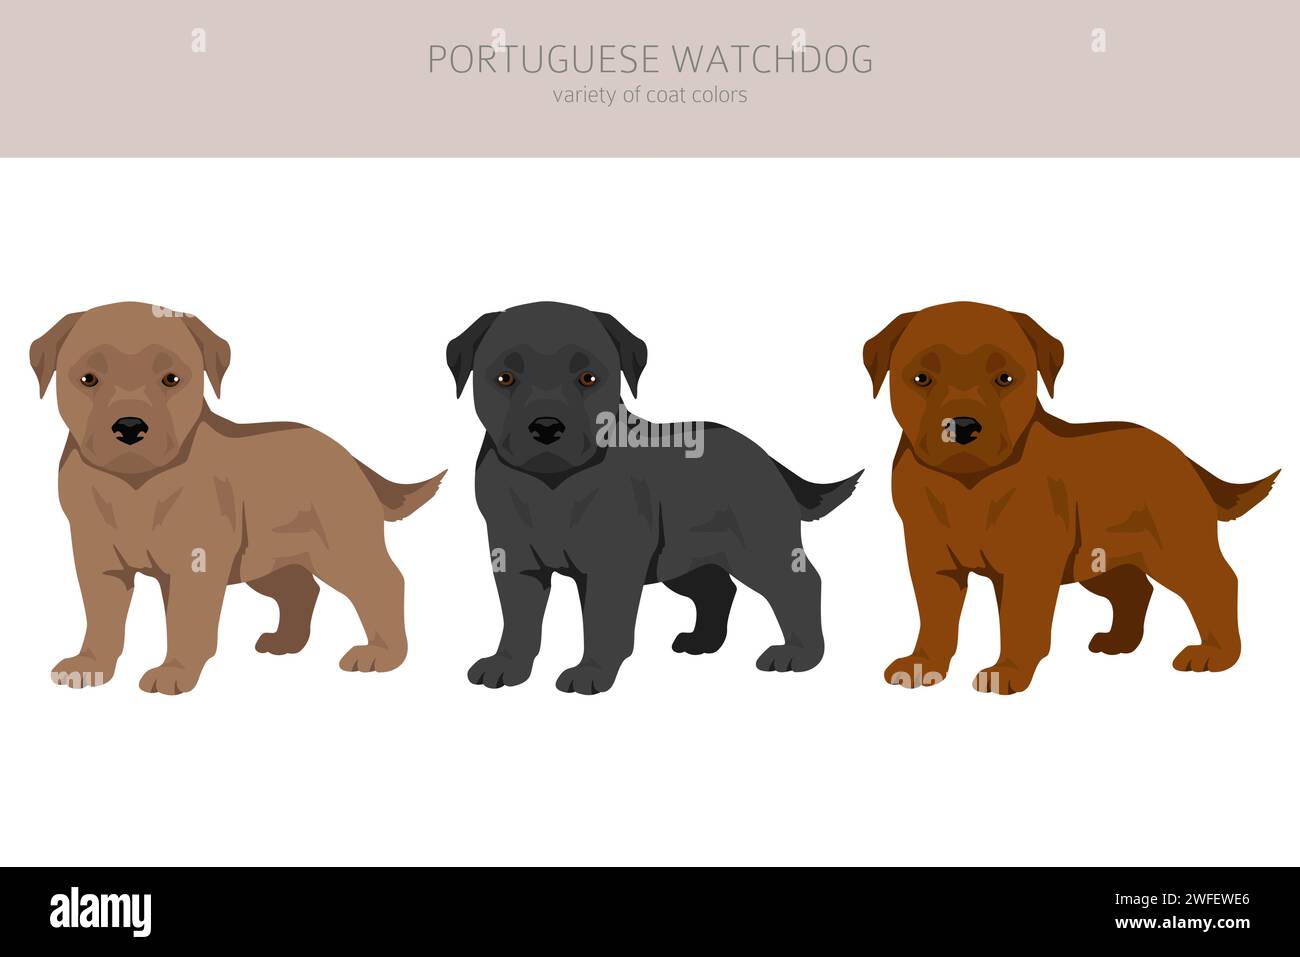 Portuguese Watchdog puppies clipart. All coat colors set. All dog ...